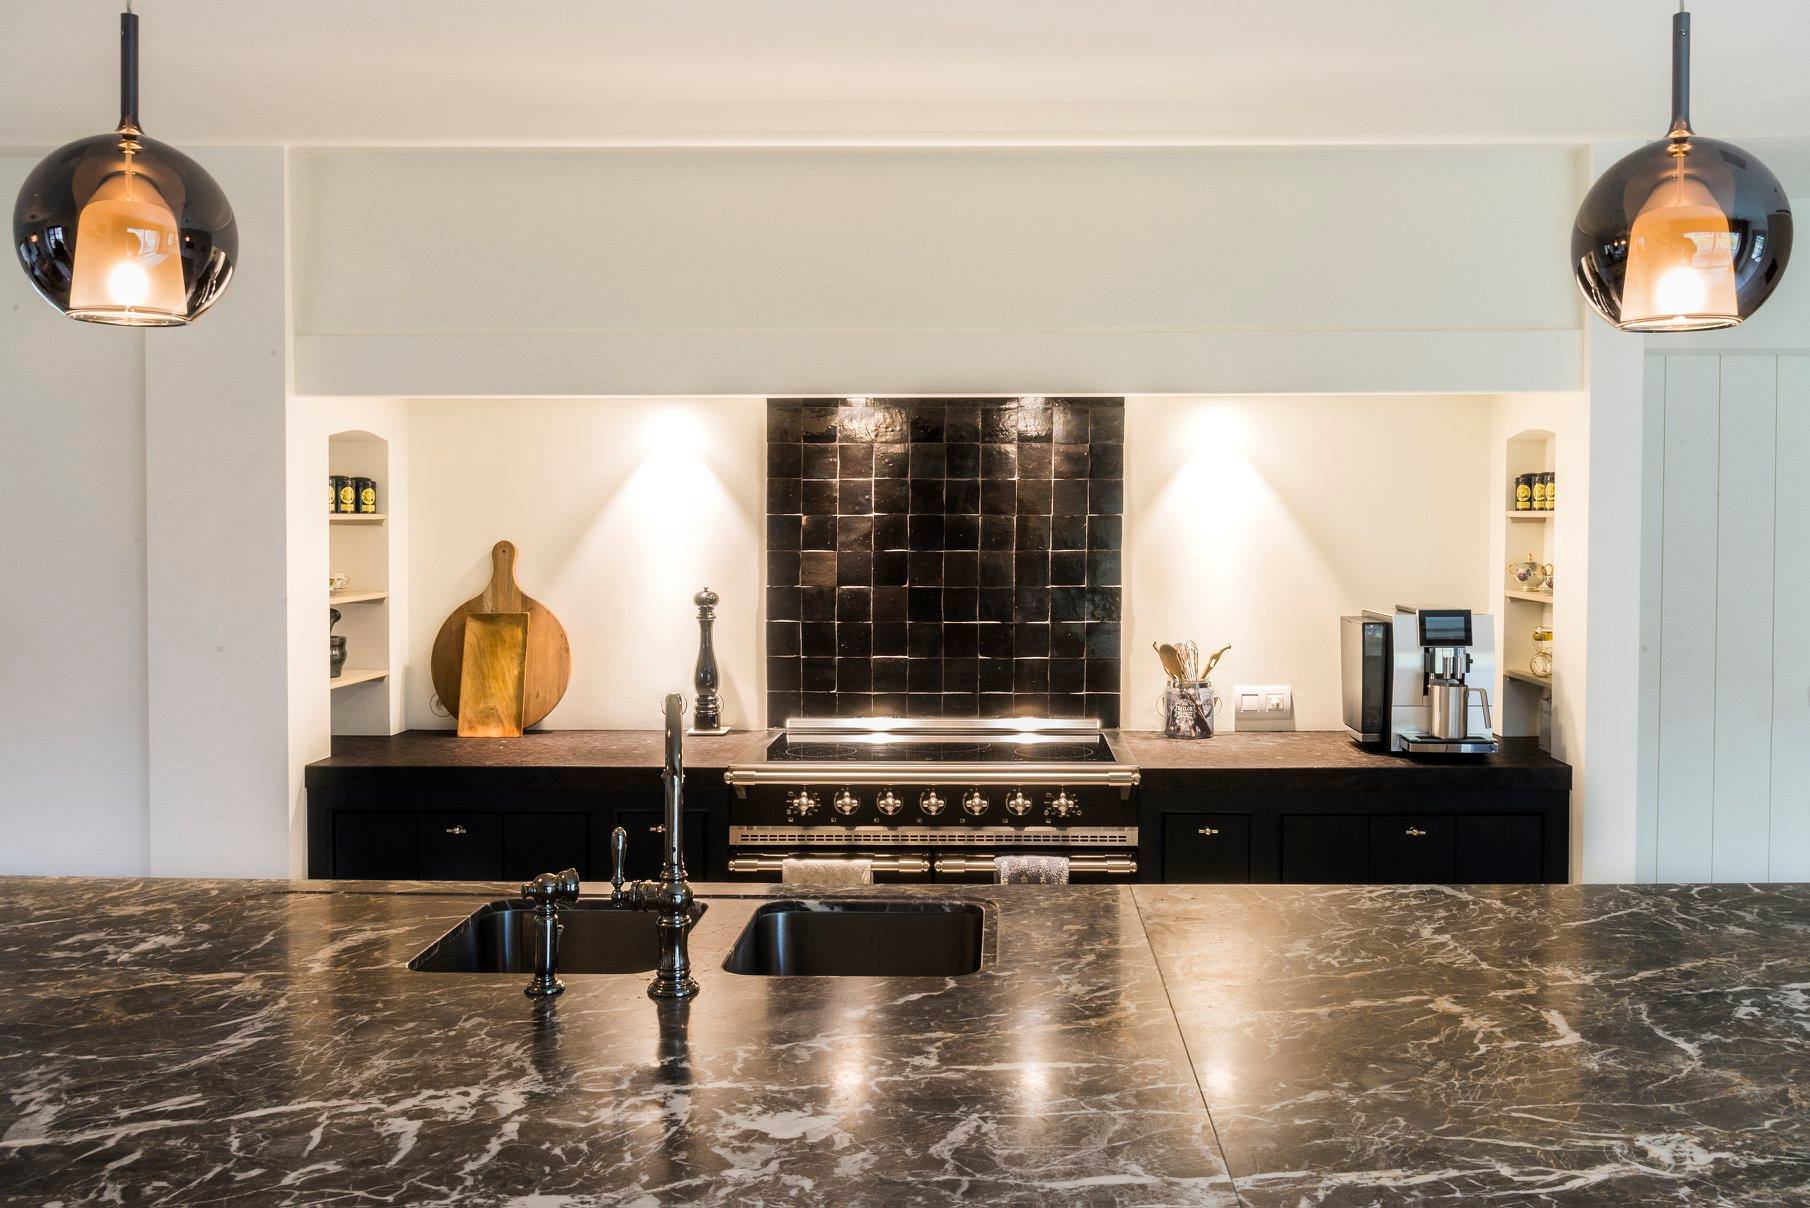 belgian kitchen design - recently installed bespoke kitchen